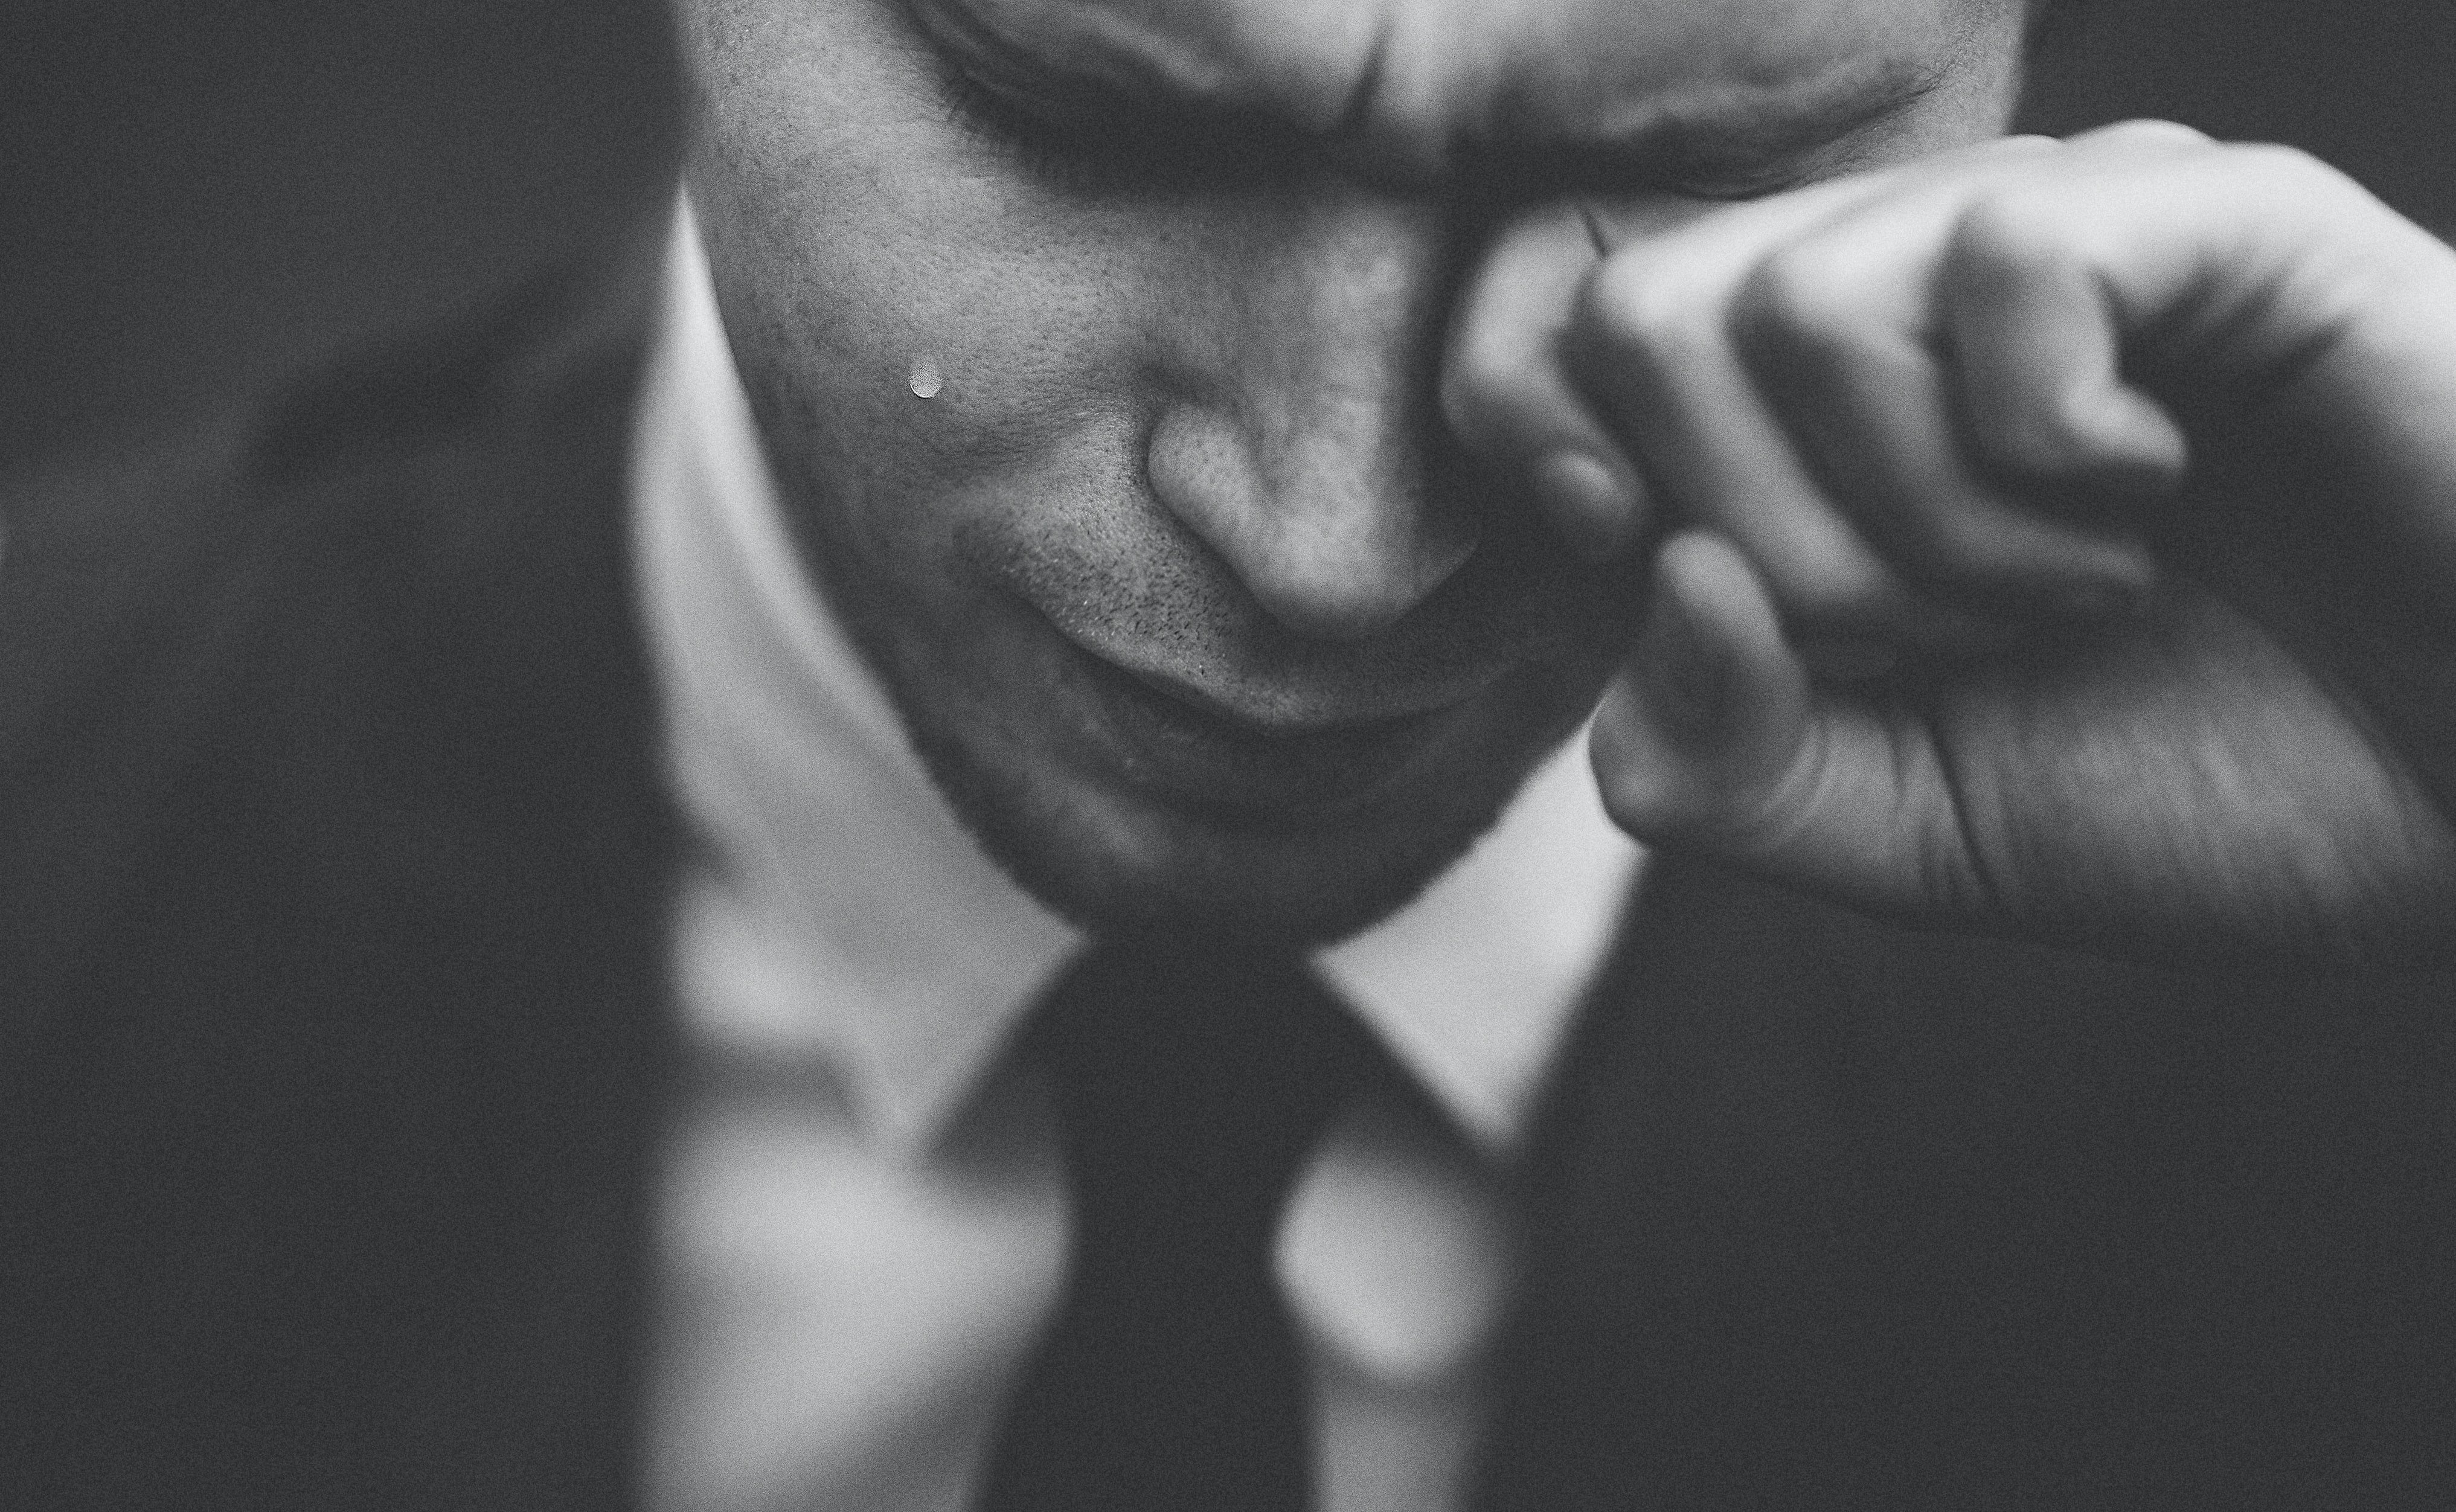 Edward konnte seine Tränen nicht kontrollieren, während er seine tragische Geschichte erzählte. | Quelle: Unsplash